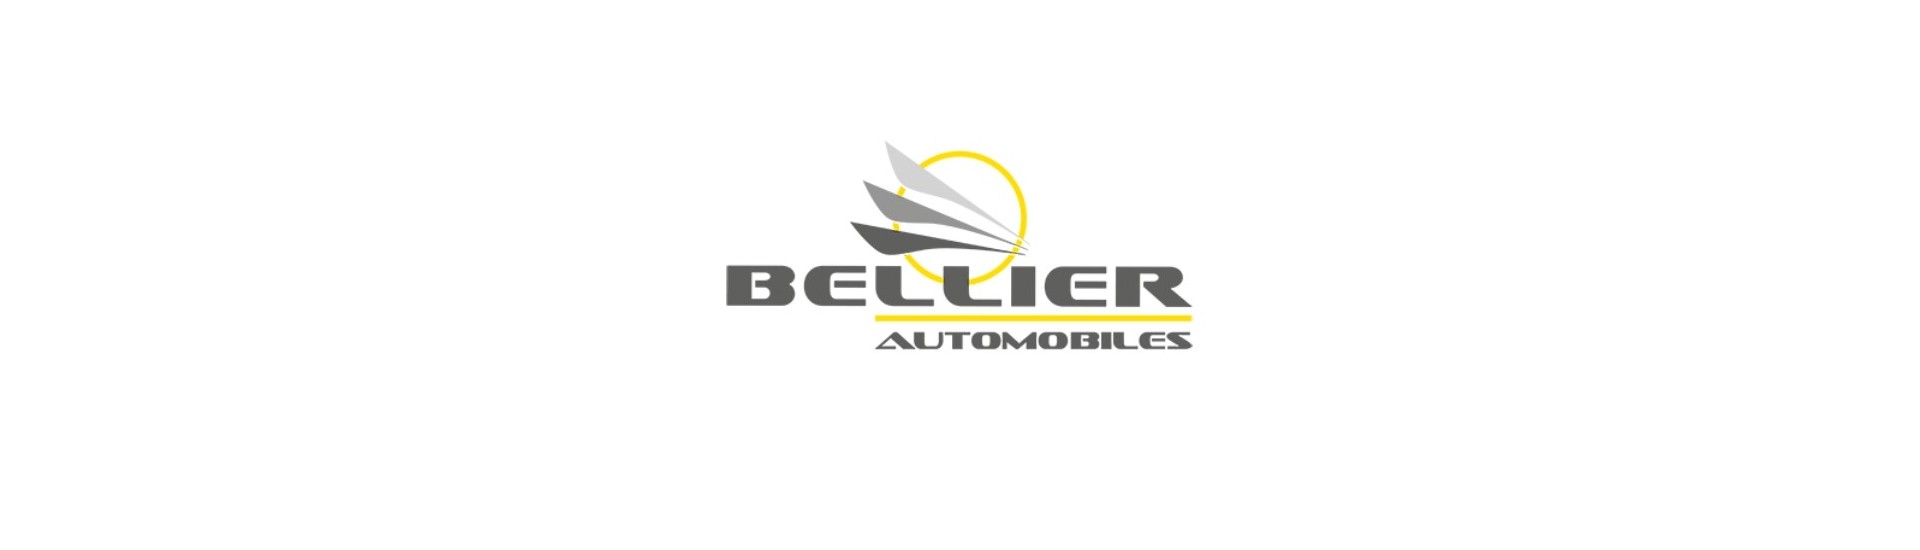 Motorcylinder till bästa pris för bil utan tillstånd Bellier